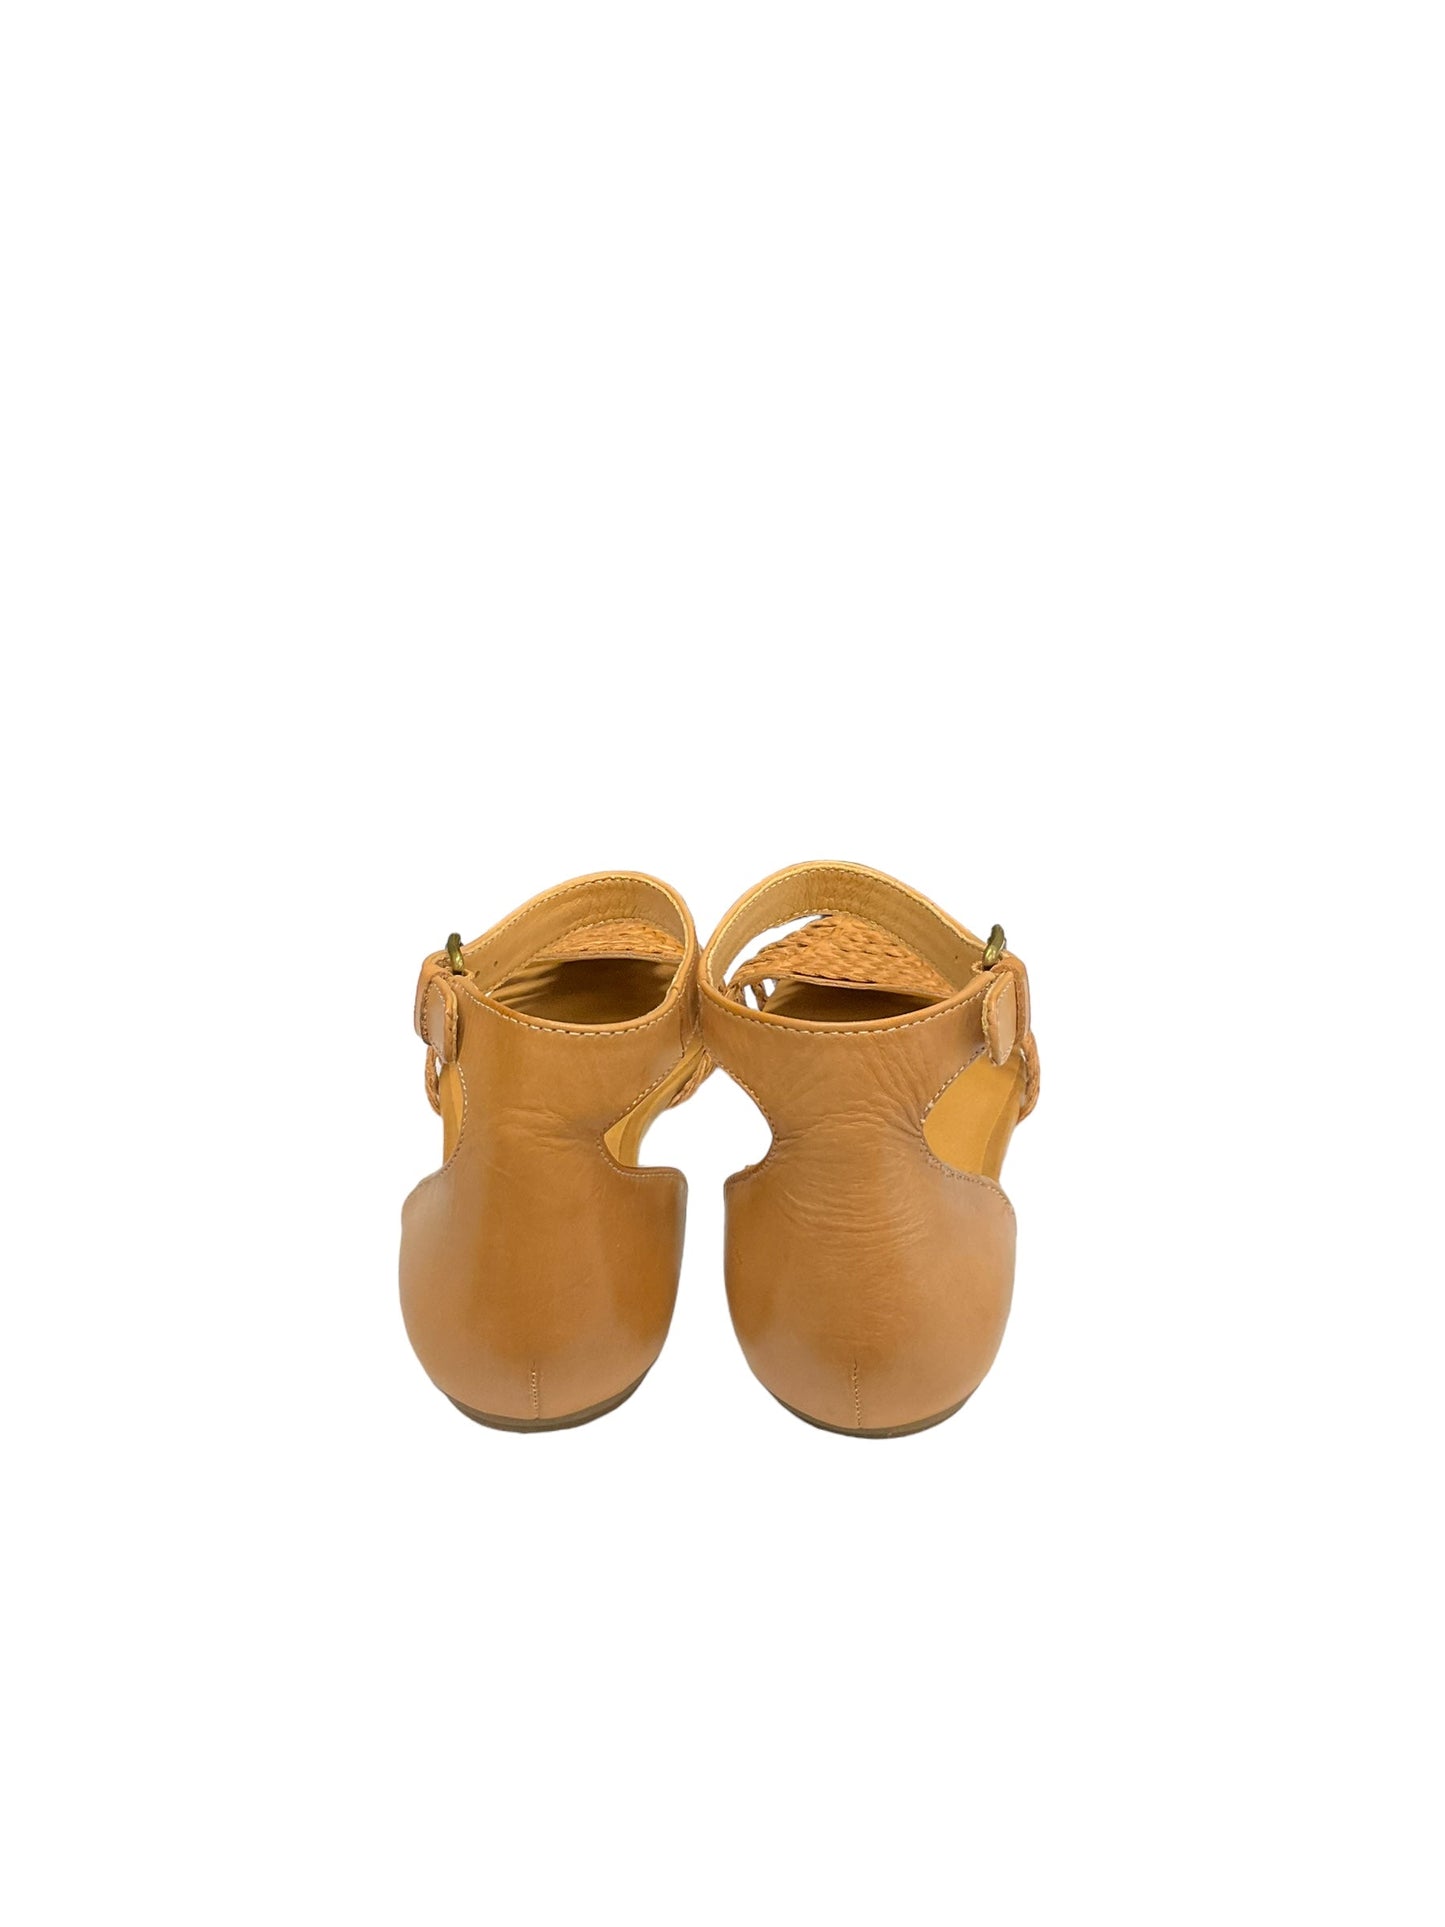 Tan Sandals Flats Crown Vintage, Size 8